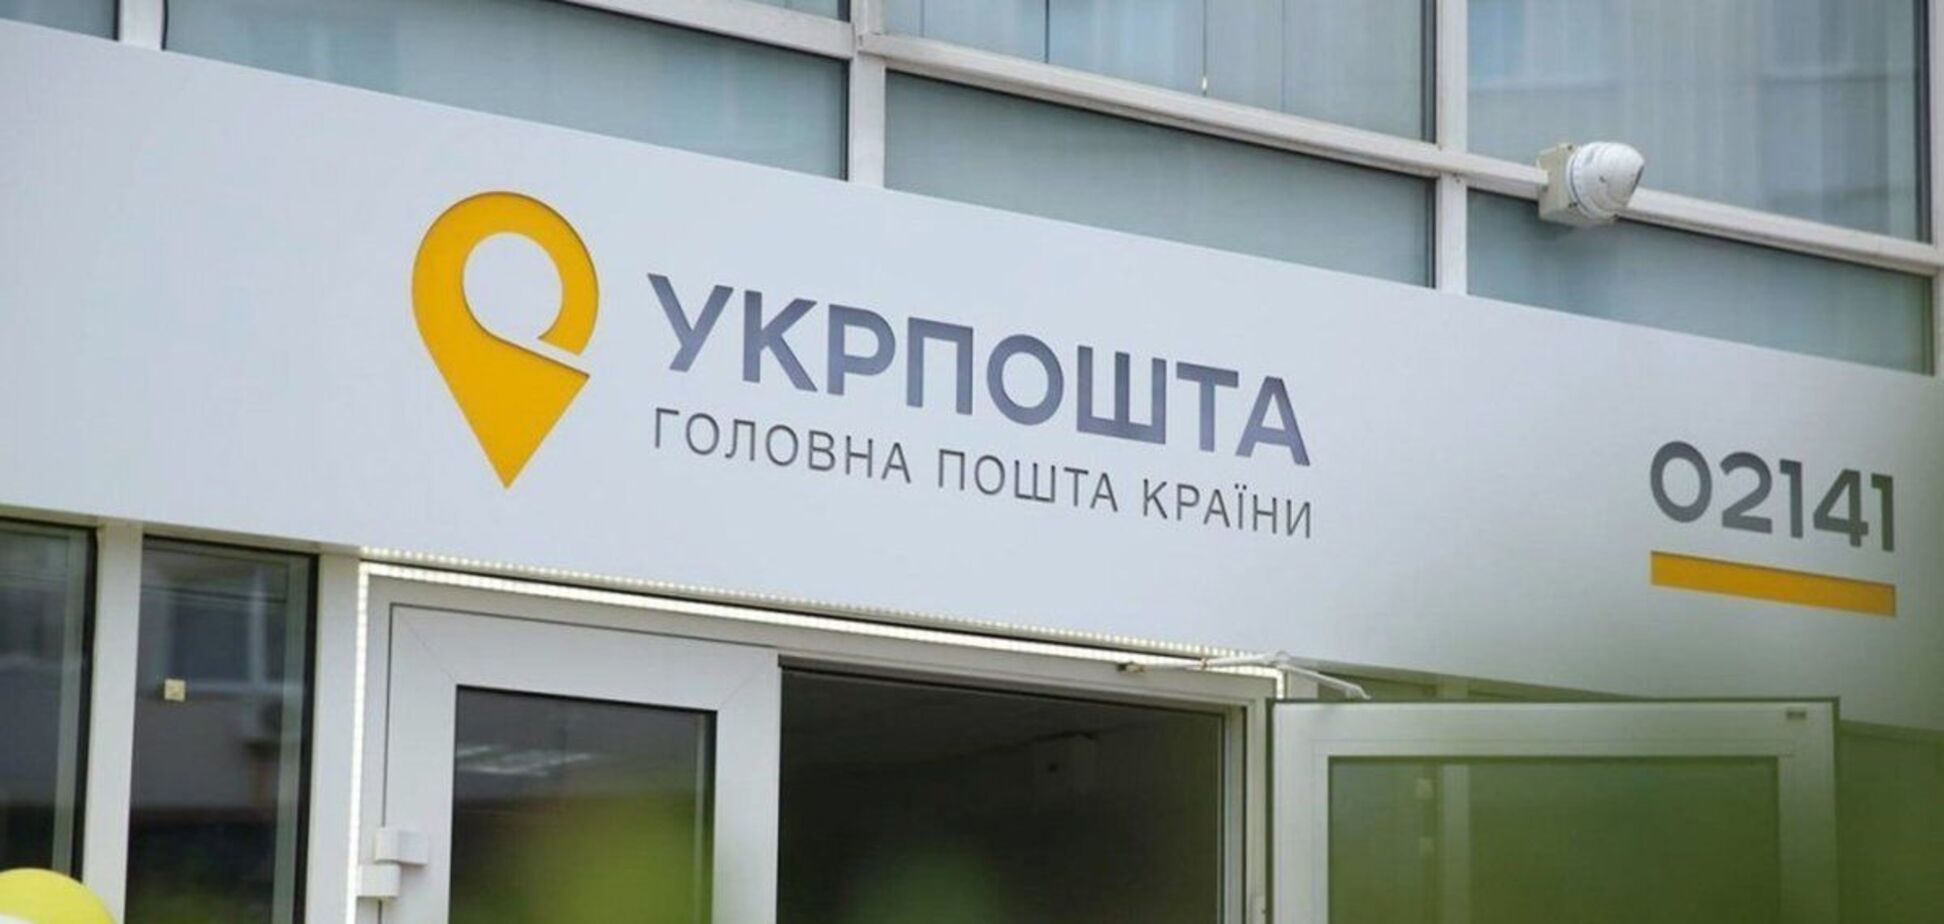 У Кривому Розі працівниця 'Укрпошти' відмовилася обслуговувати клієнта українською. Відео скандалу